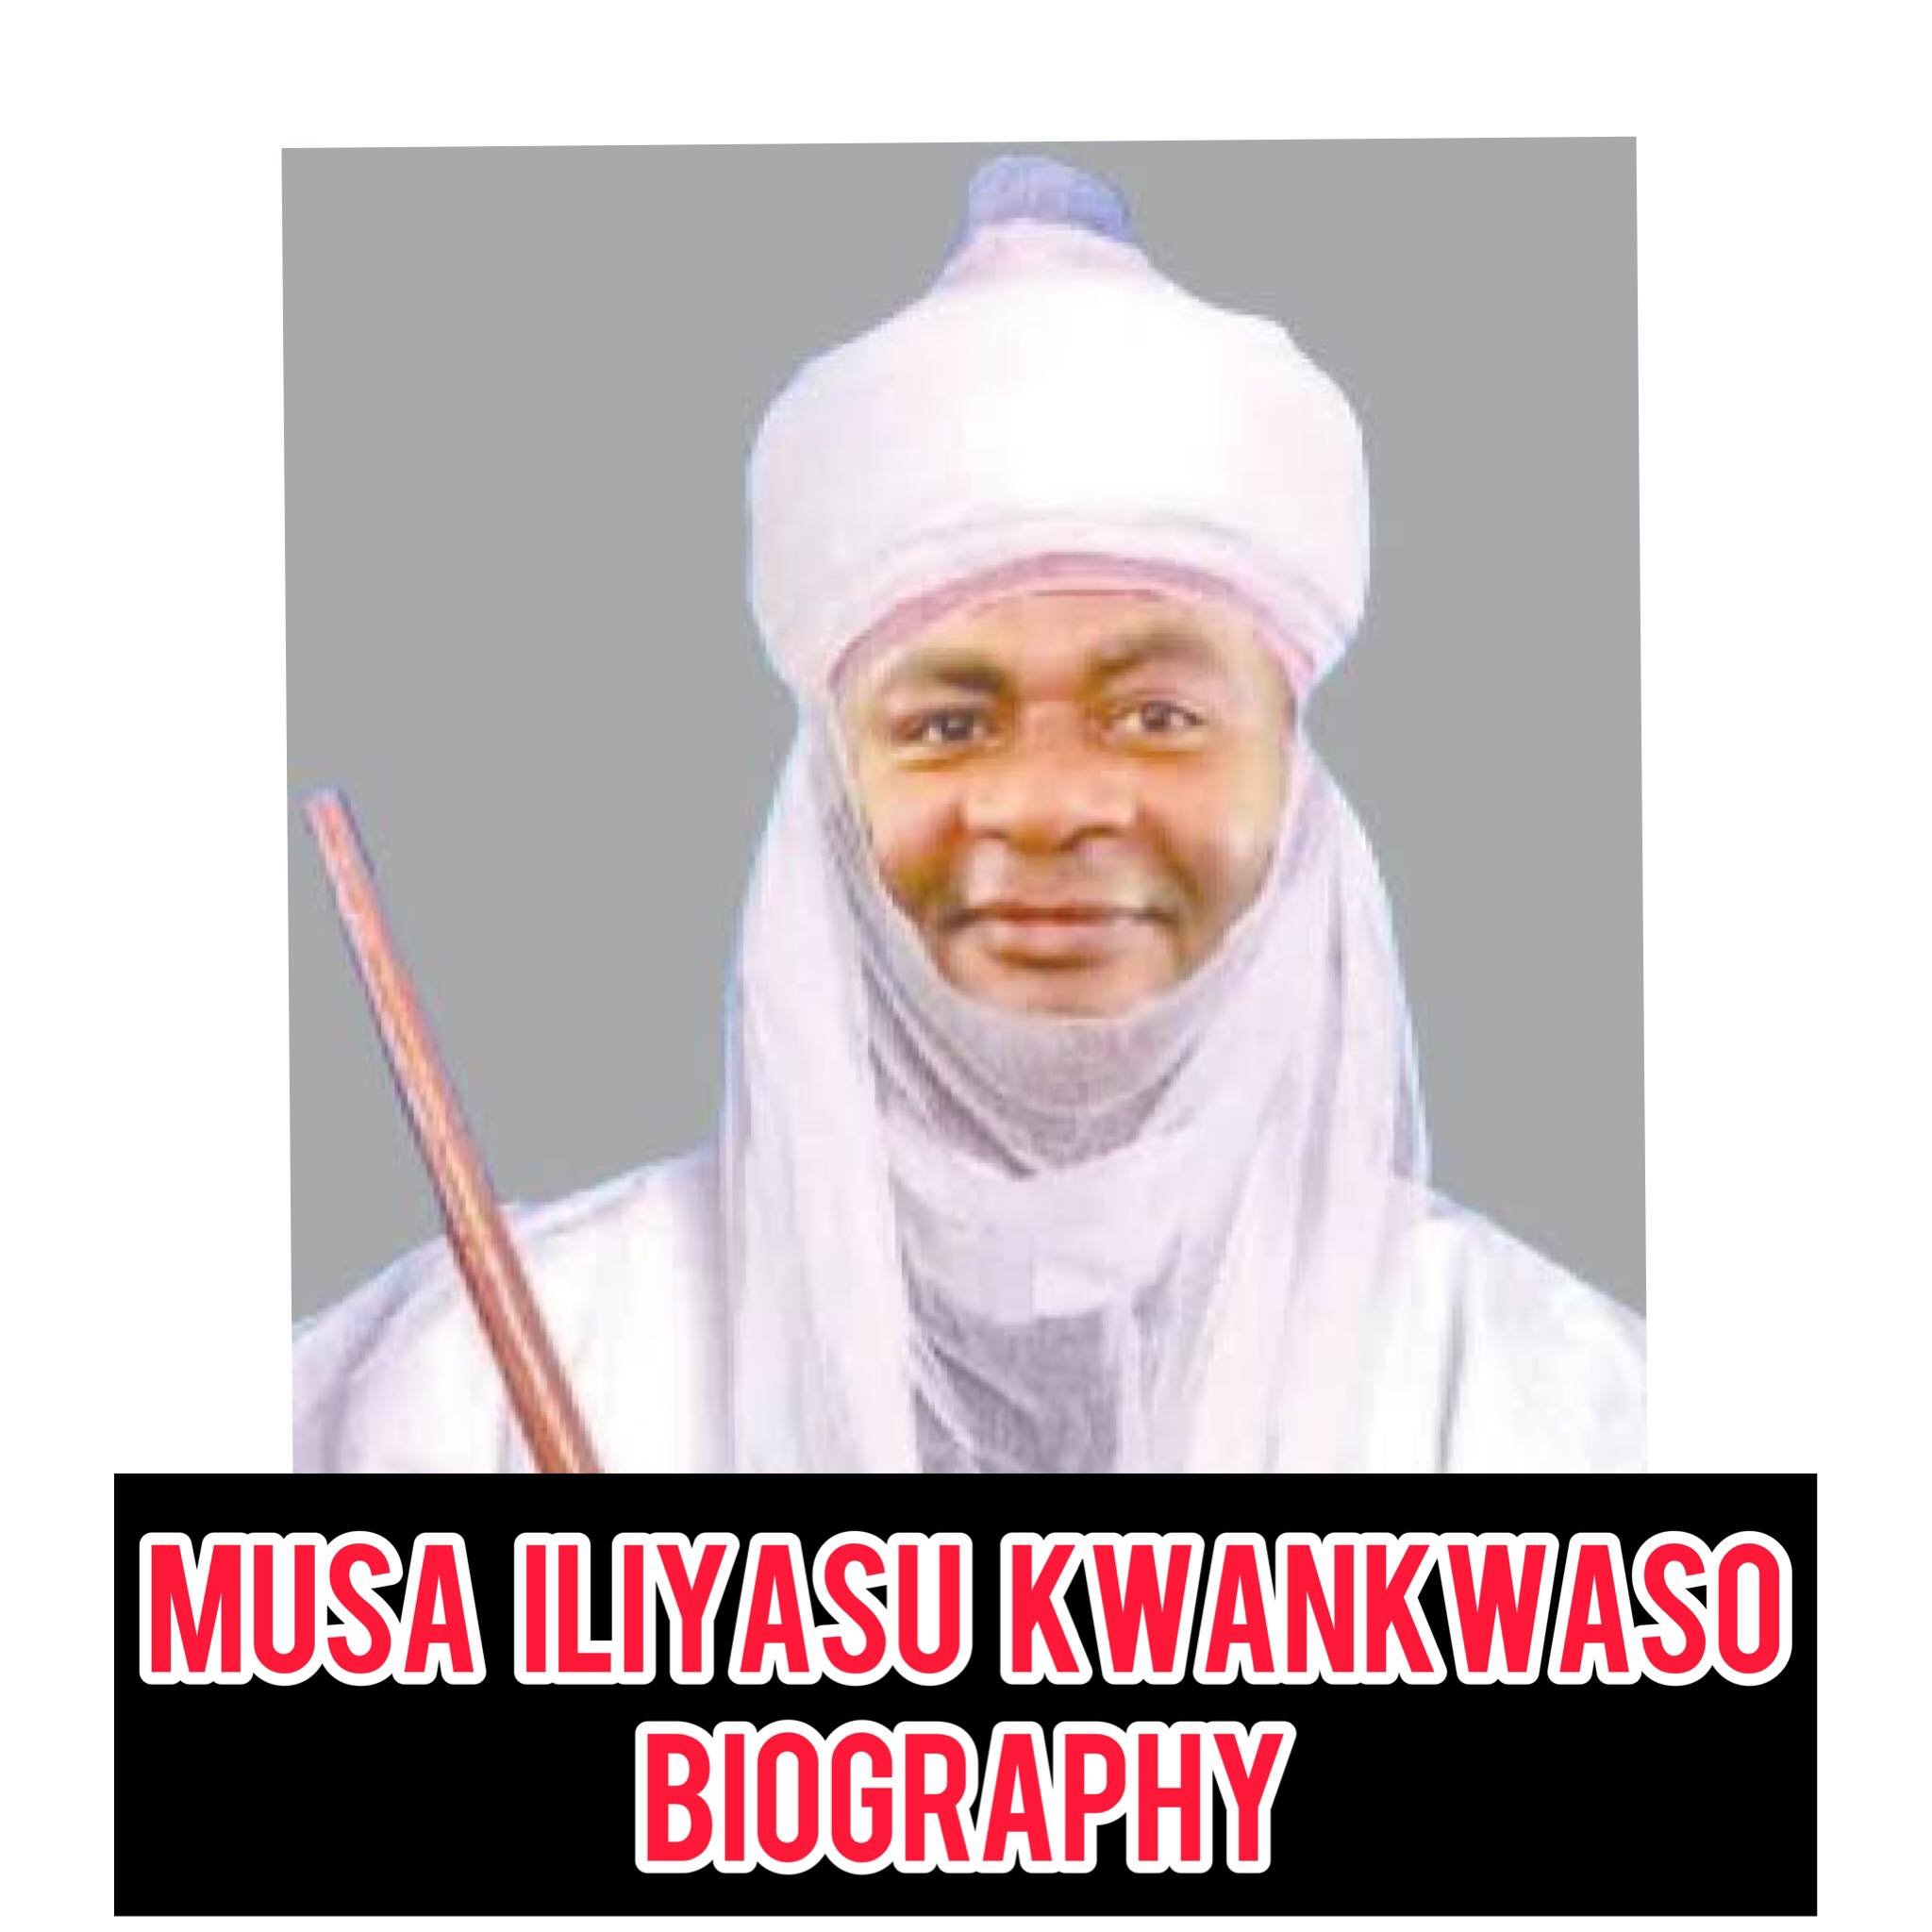 Musa Iliyasu Kwankwaso Biography